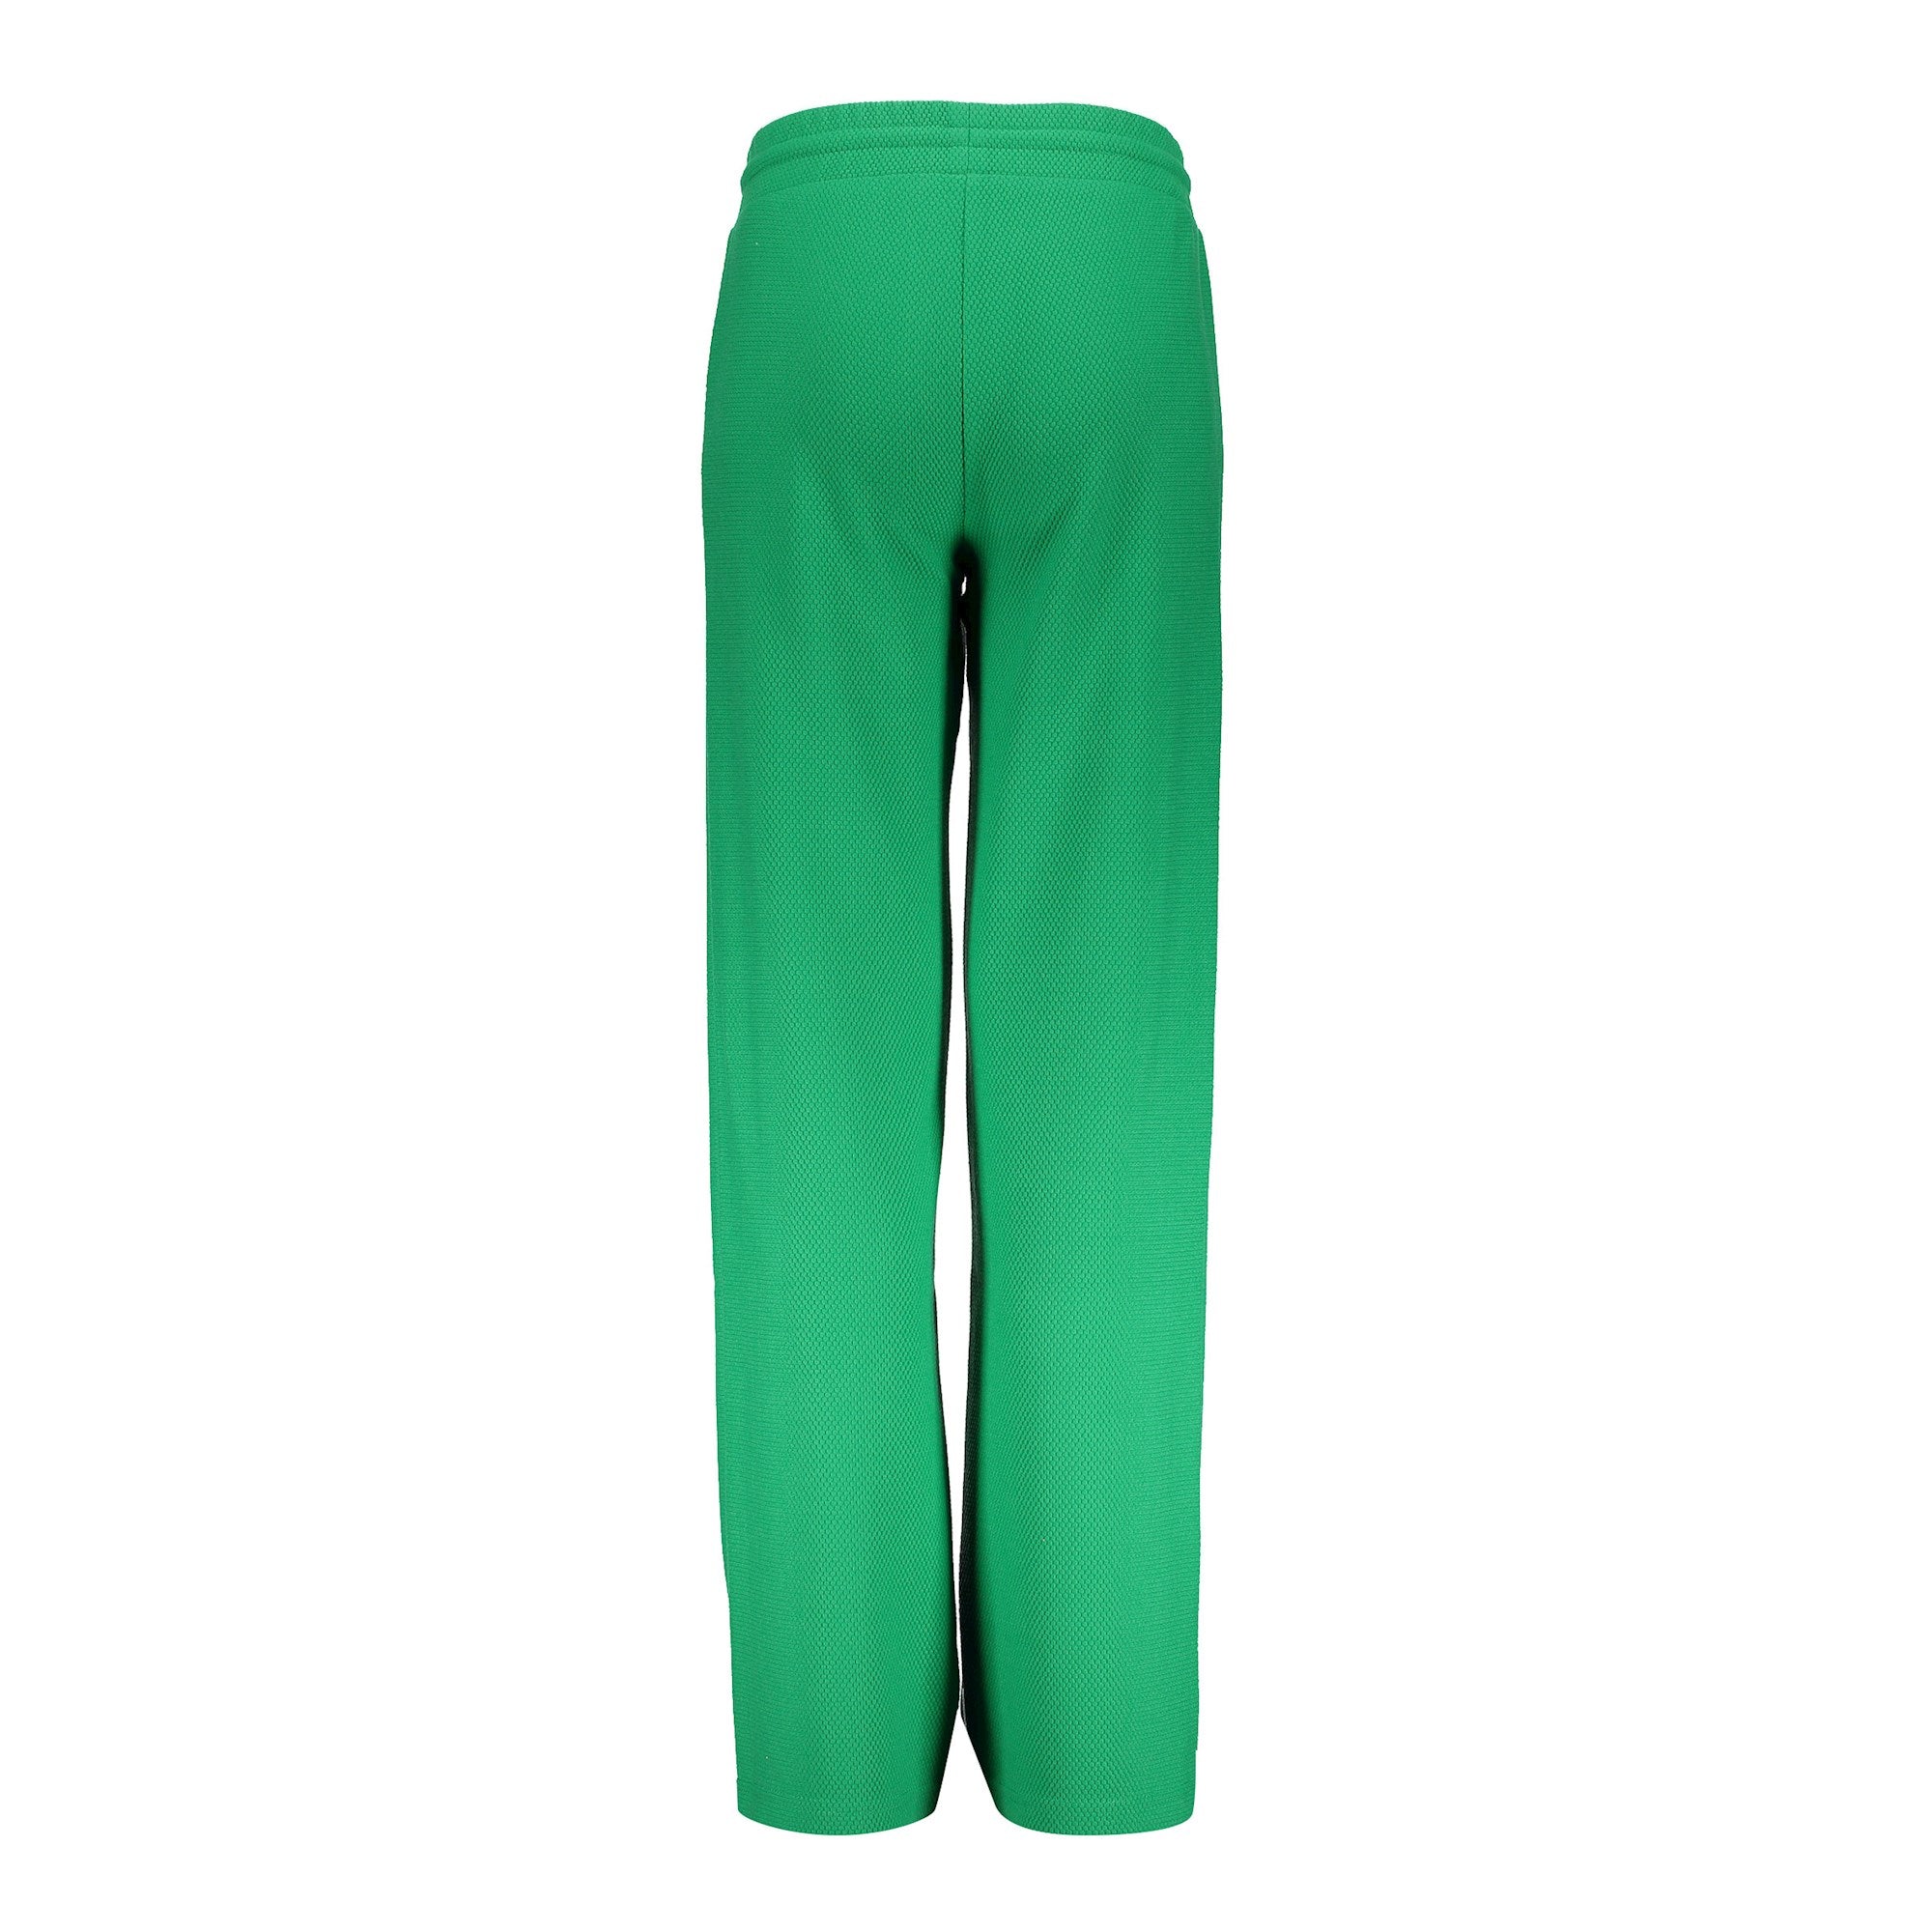 Meisjes Pants wide comfy van Geisha in de kleur Green in maat 176.